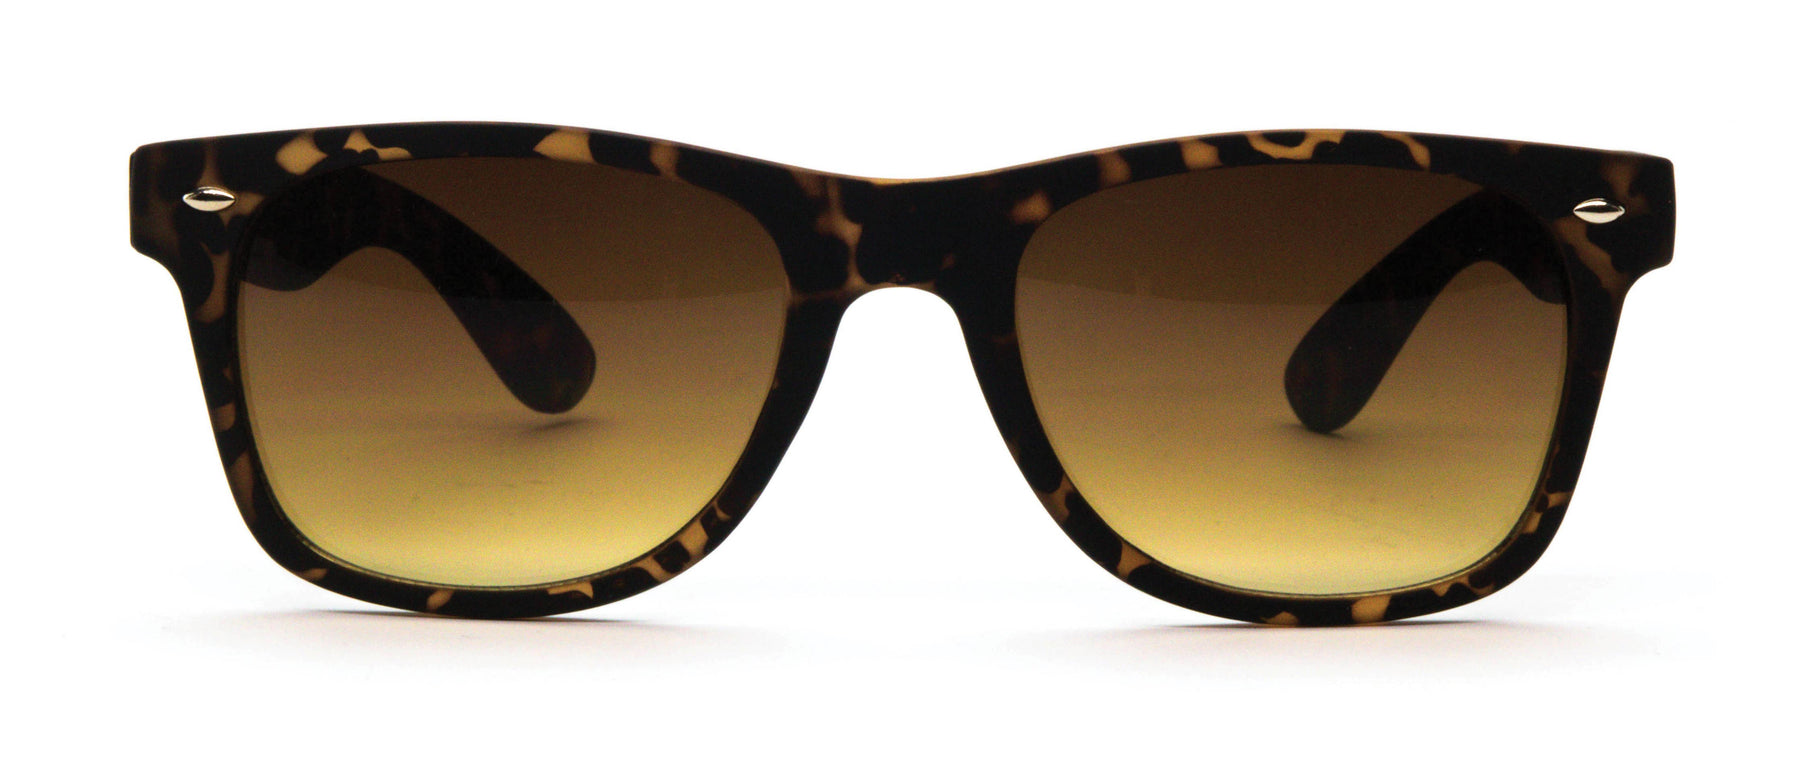 Optimum Optical Sunglasses Open Stock